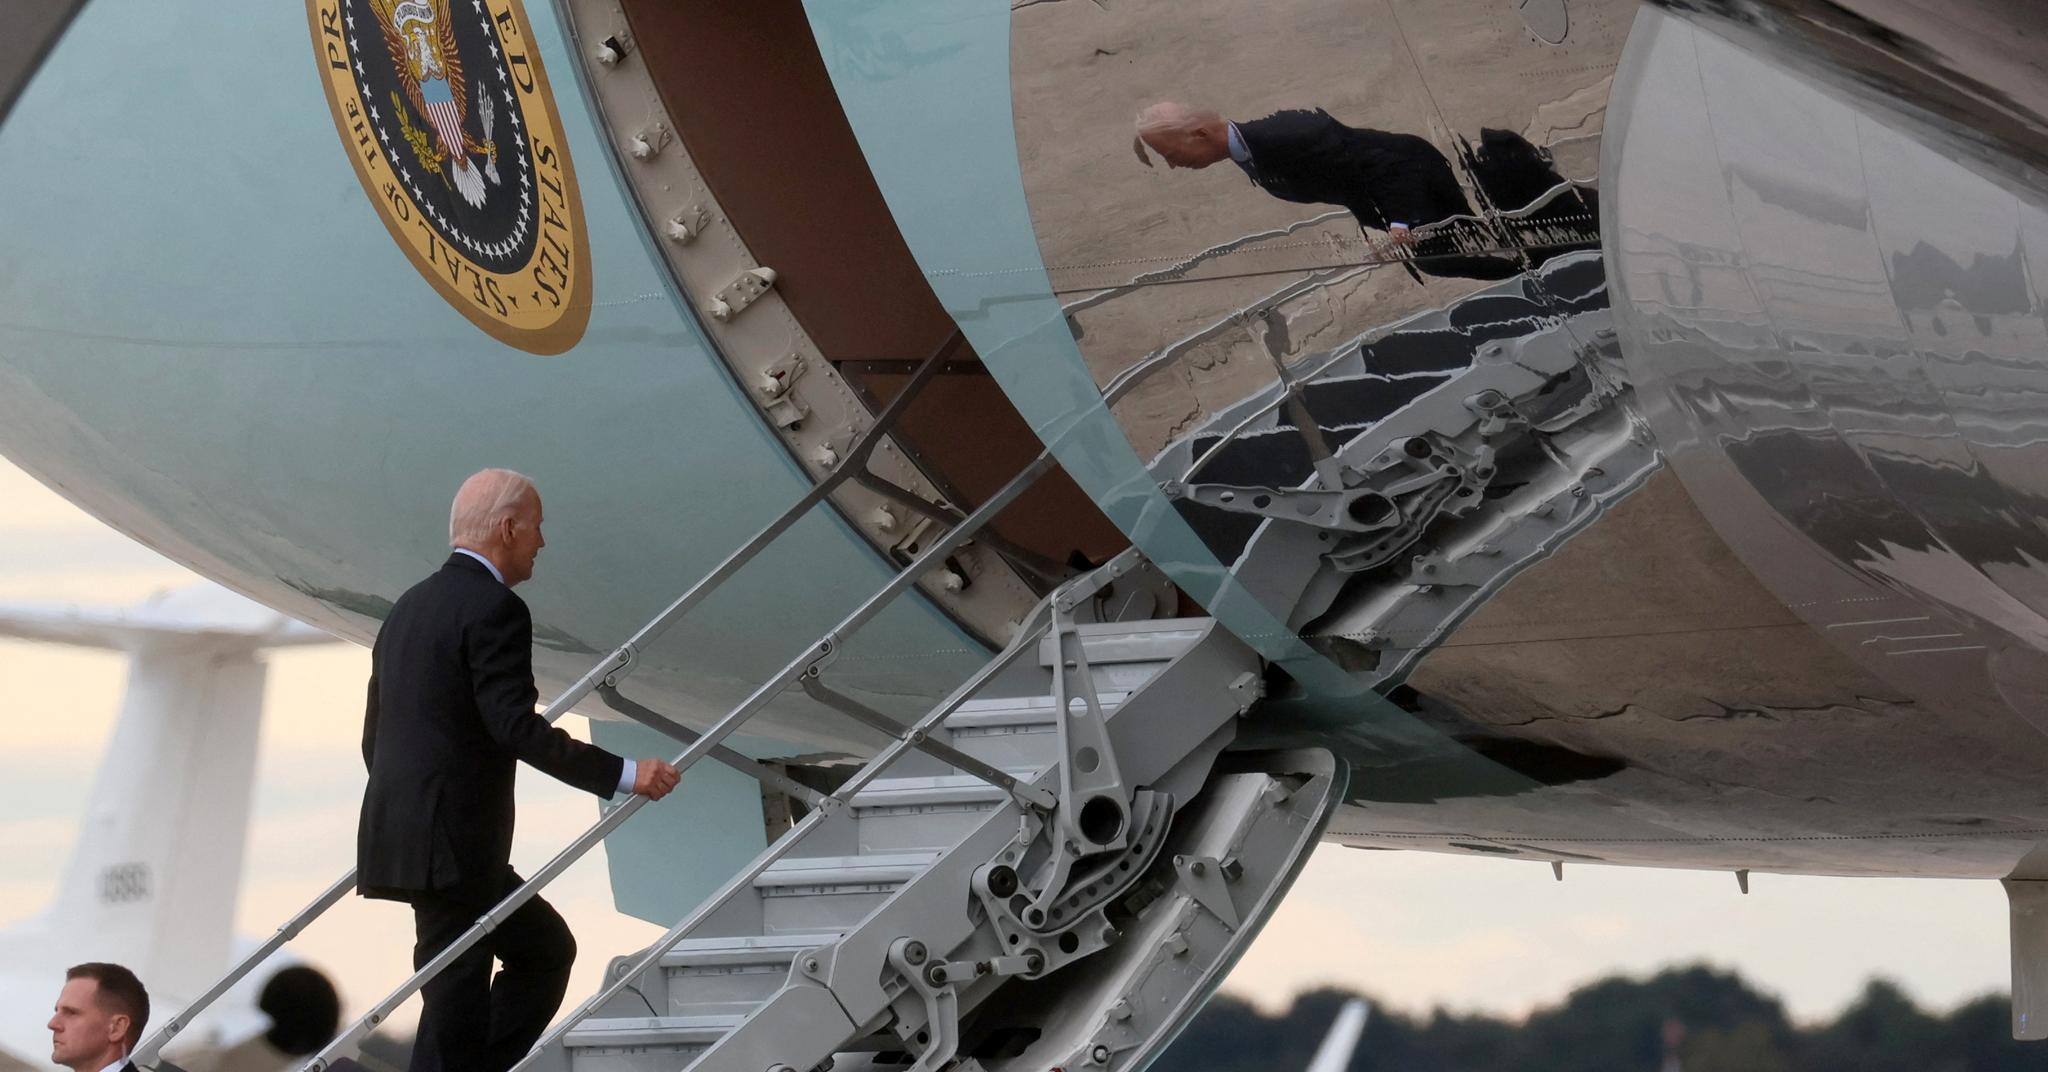 Biden arriva in Israele il dodicesimo giorno di guerra.  “Il viaggio esemplifica il modo in cui Biden crede di avere influenza”.